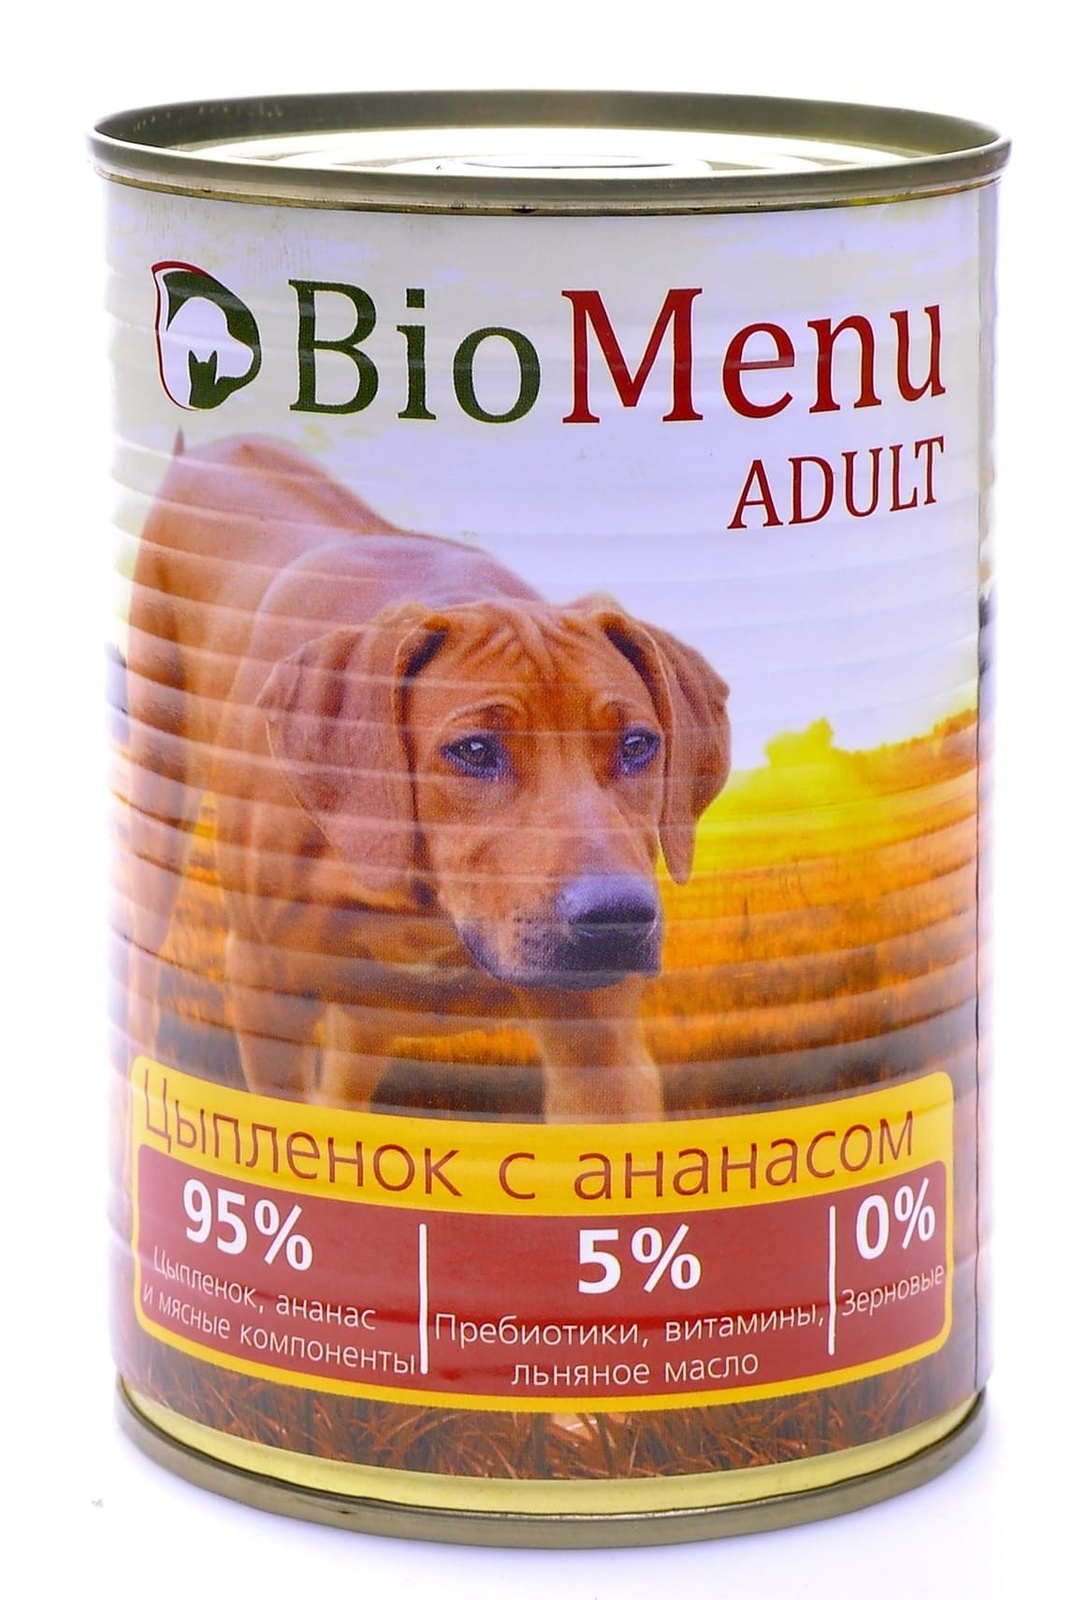 BioMenu BioMenu консервы для собак цыпленок с ананасом (100 г) biomenu biomenu консервы для щенков с говядиной 100 г